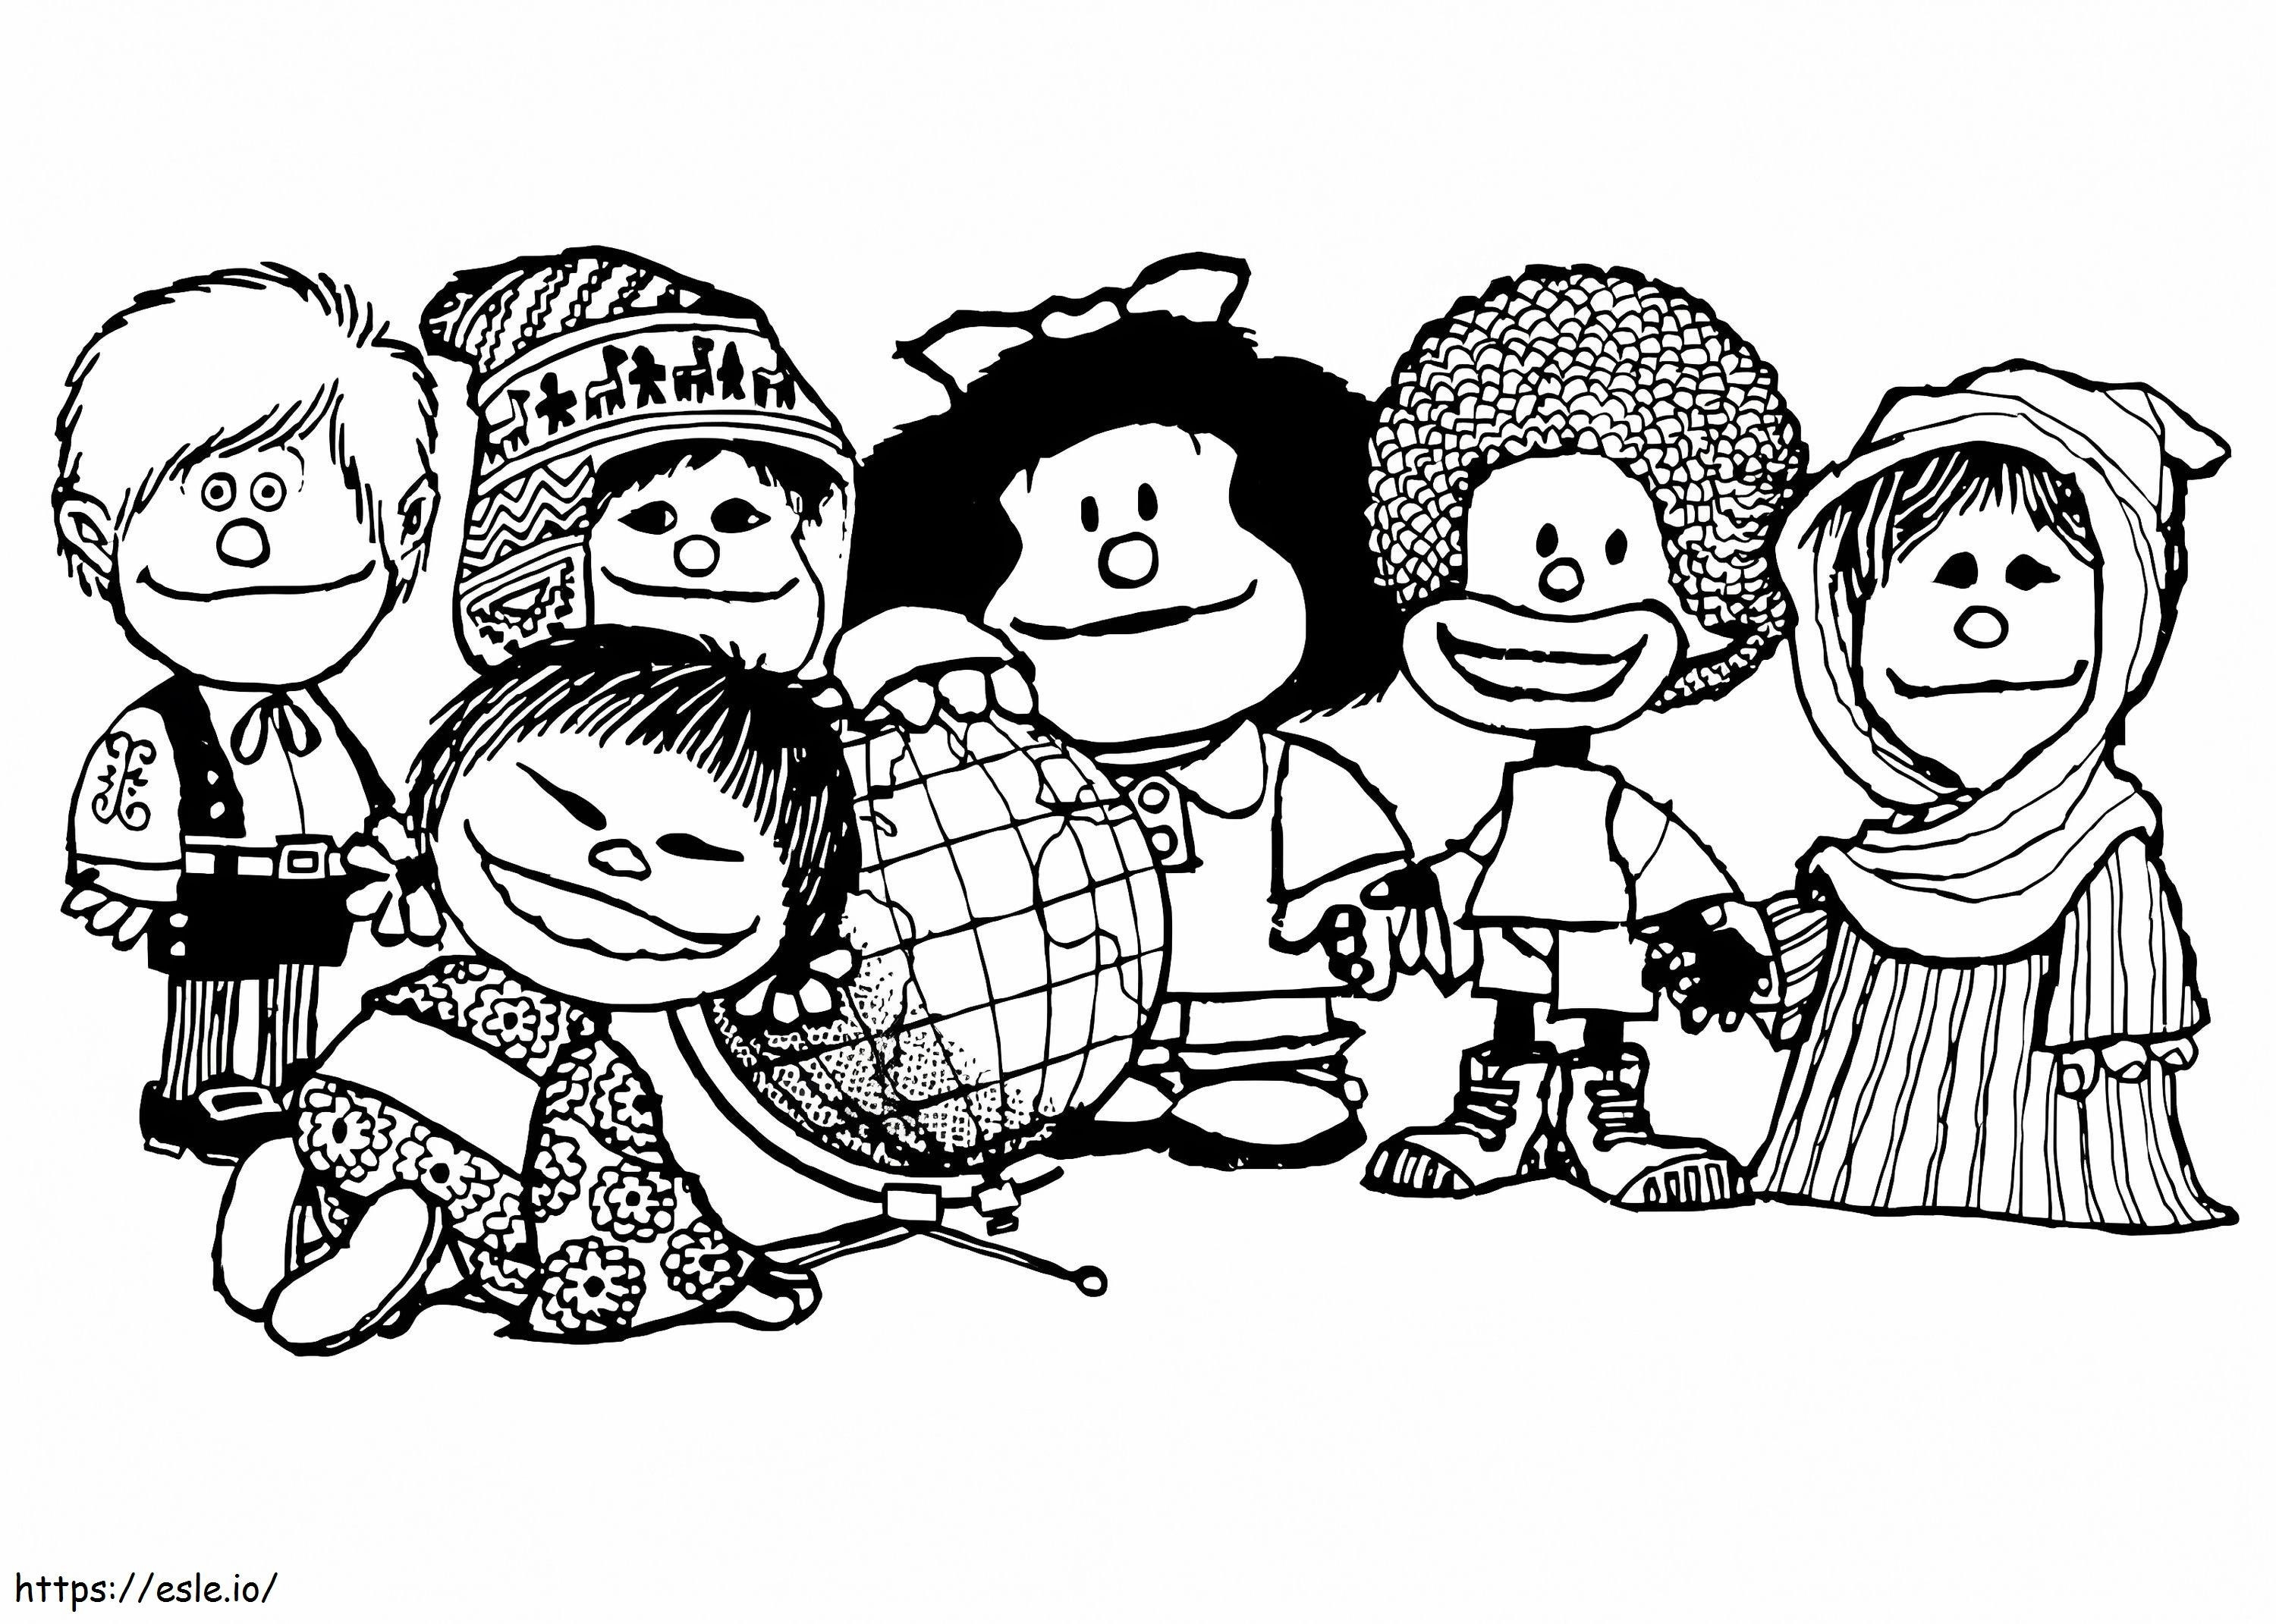 Mafalda z przyjaciółmi kolorowanka